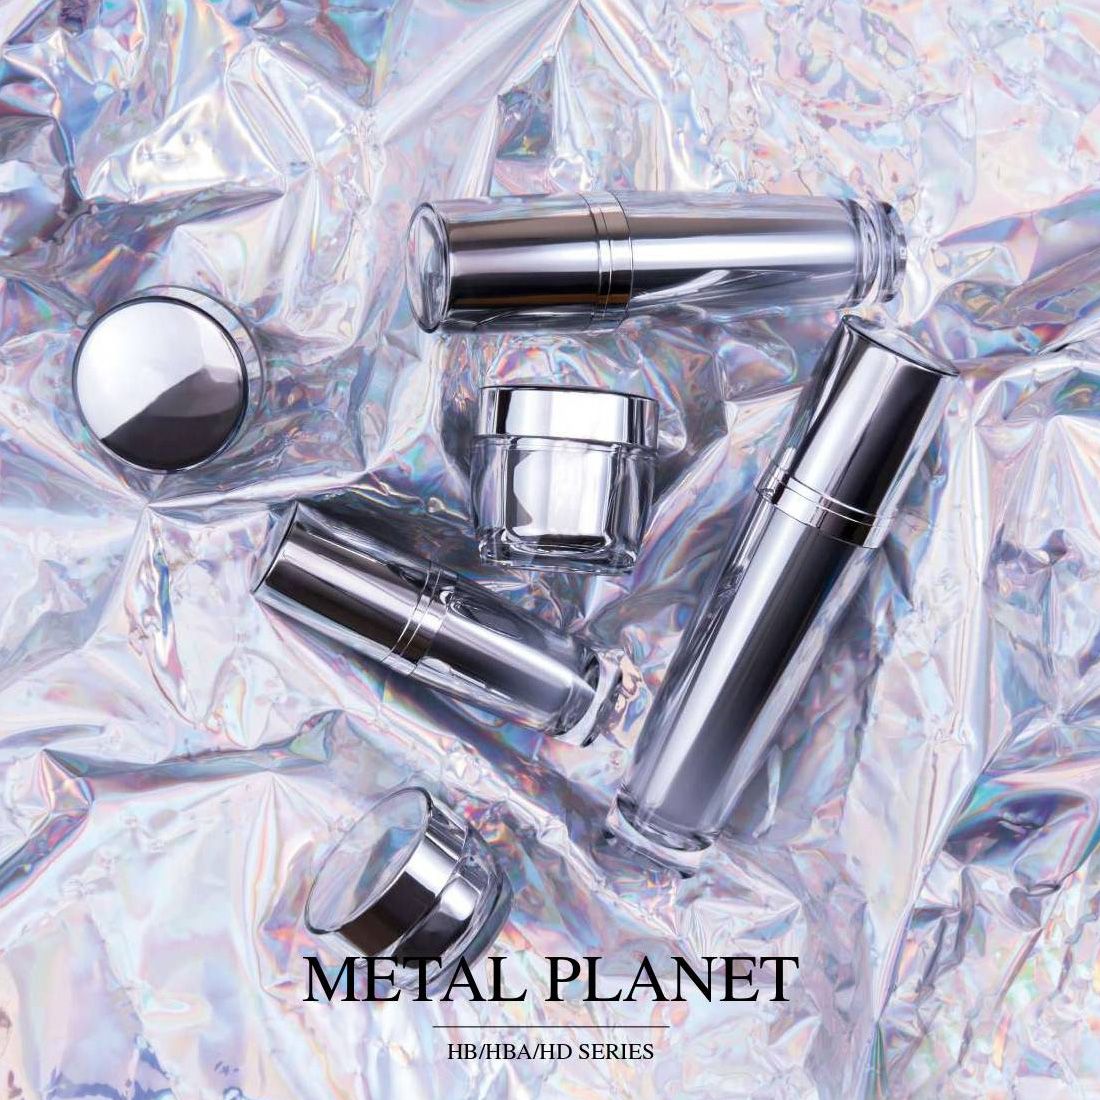 Metal Planet (luxe cosmetische en huidverzorgingsverpakkingen van acryl) - HB / HBA / HD-serie